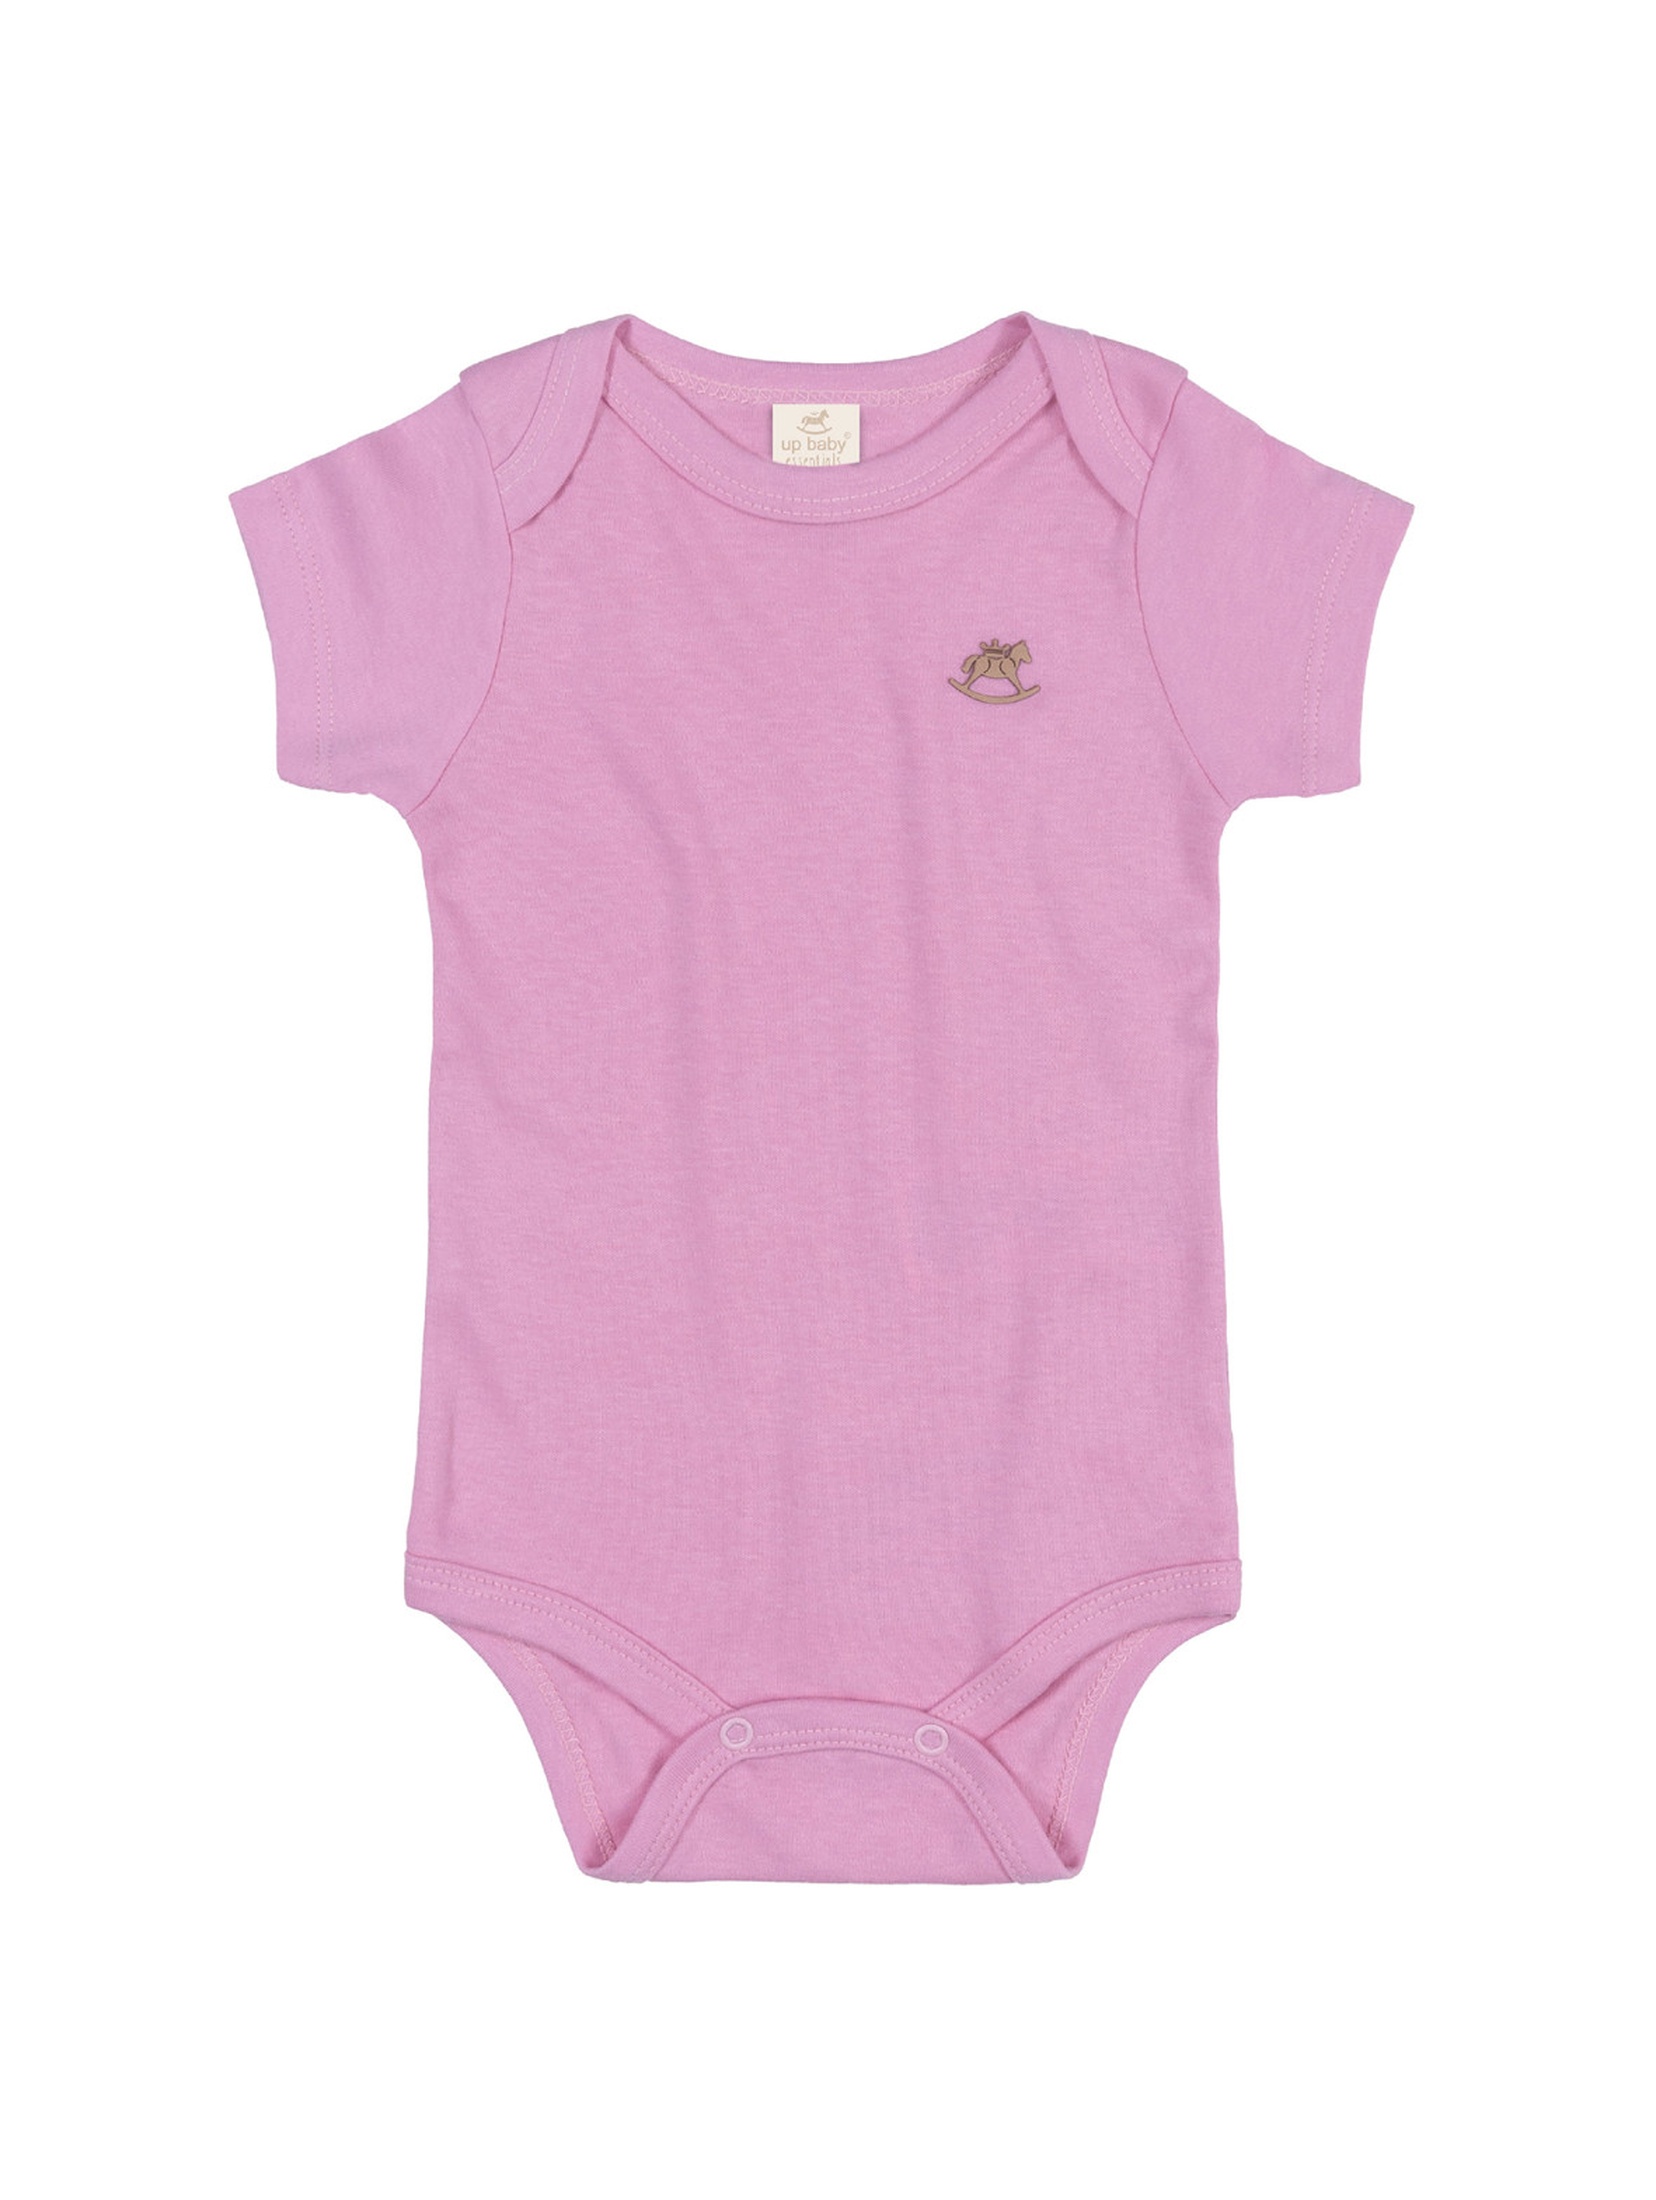 Gładkie bawełniane body dla niemowlaka - różowe